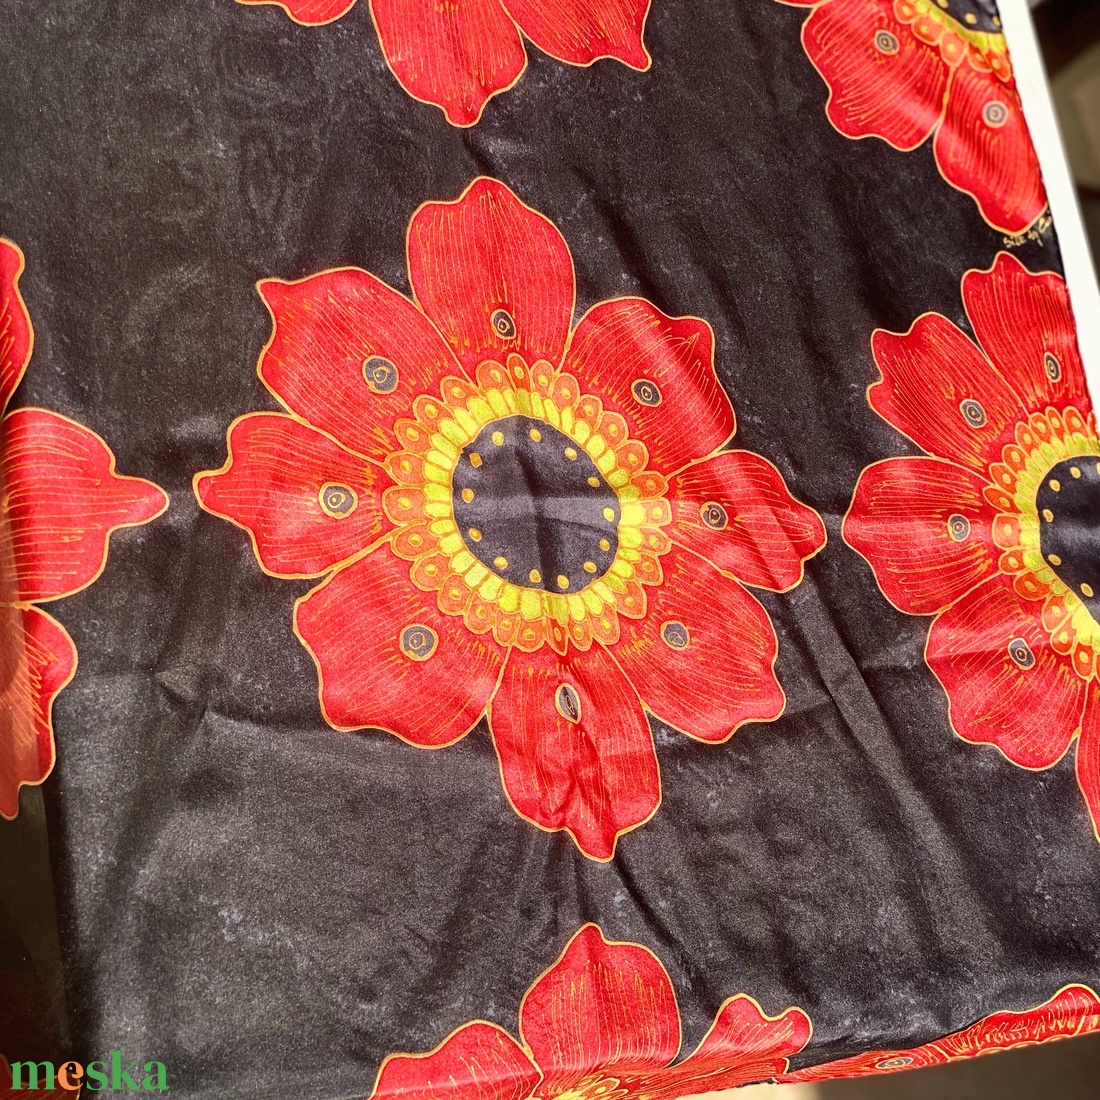 Fekete piros indiai mintás kézzel festett  selyemkendő sál - ruha & divat - sál, sapka, kendő - kendő - Meska.hu